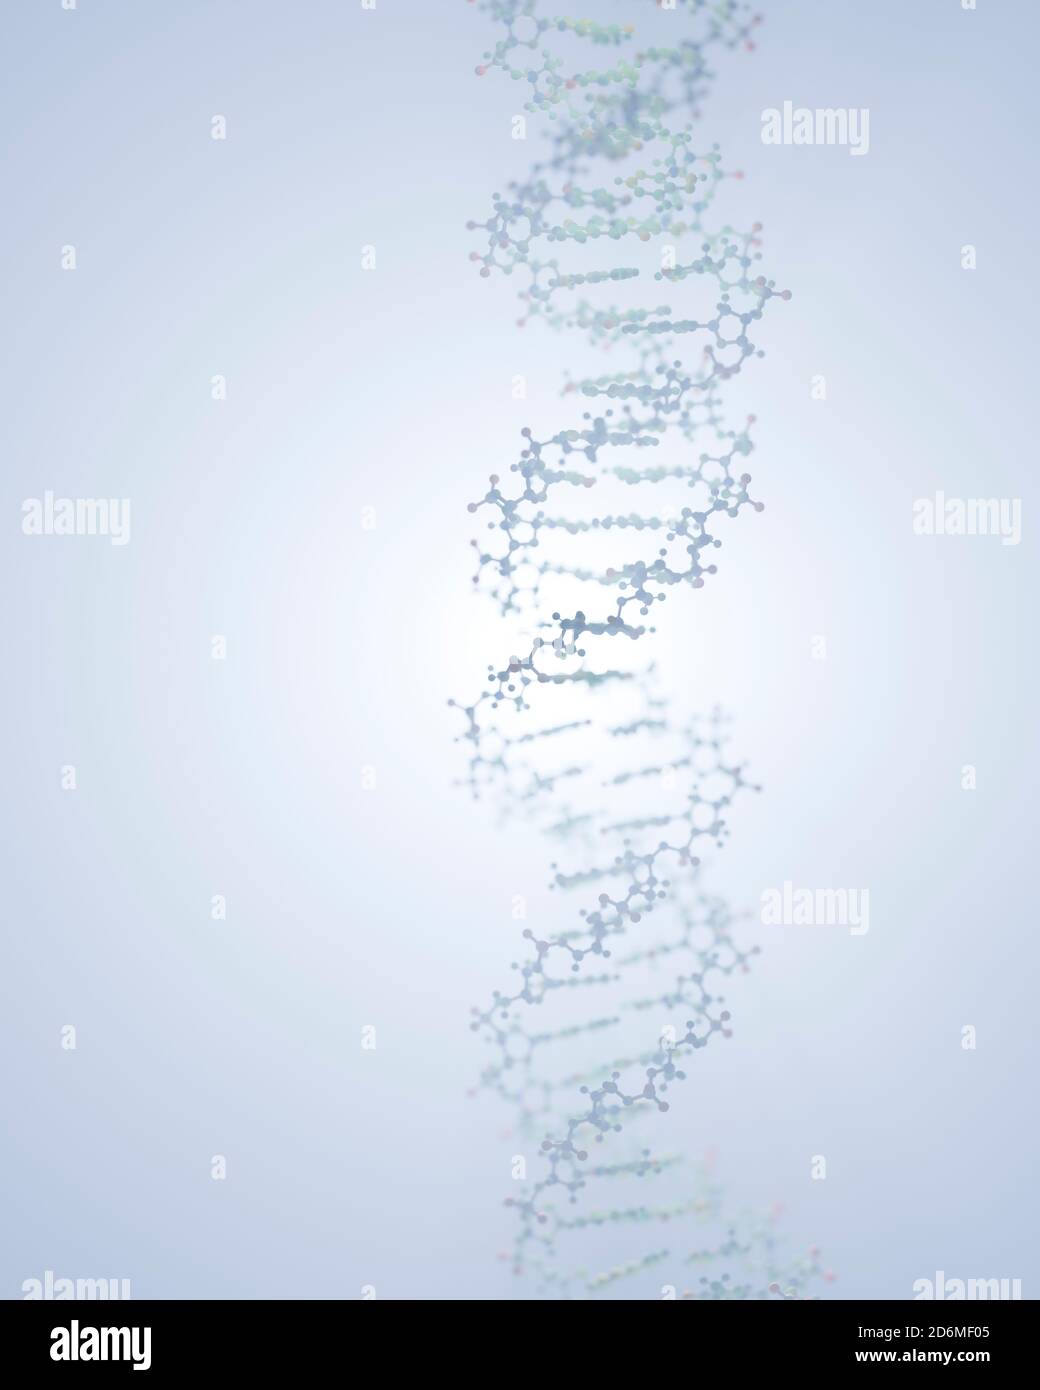 DNA, die genetische Anweisungen trägt, befindet sich im Zellkern, wo sie mit verschiedenen Proteinen in verschiedenen Prozessen interagiert, wie zum Beispiel Replikation. Stockfoto